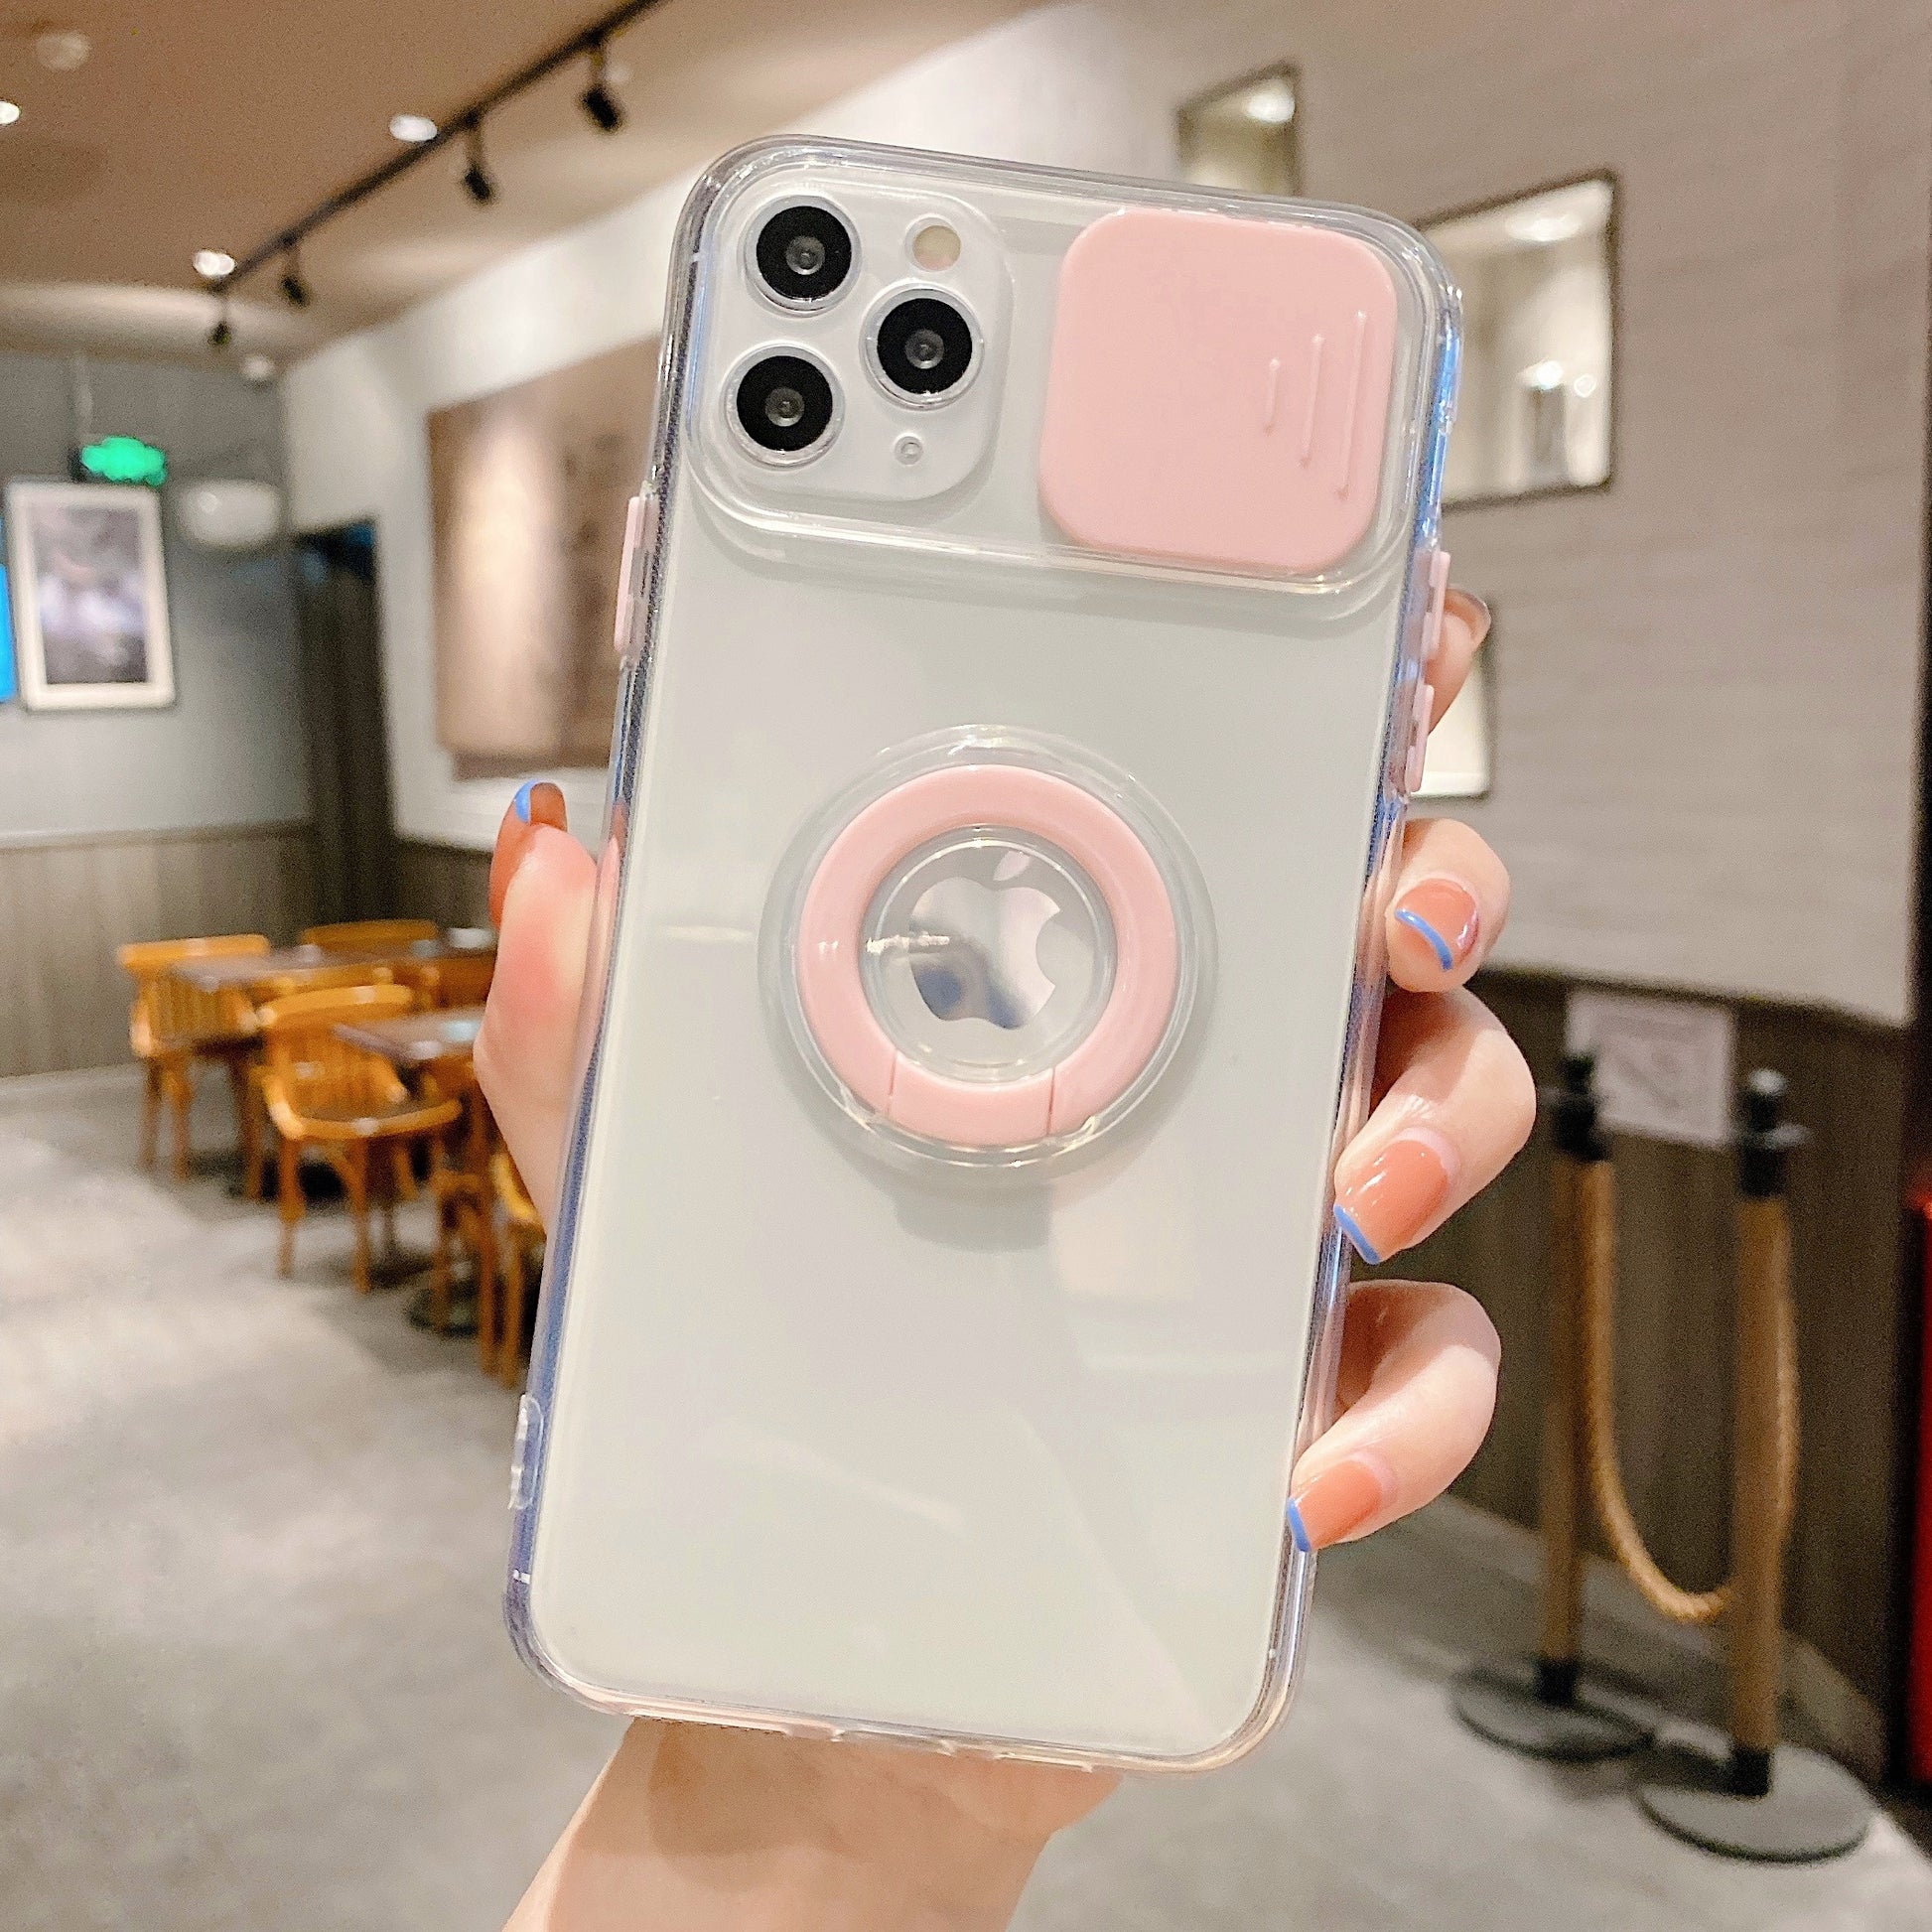 Modische iPhone Hülle mit Kameraabdeckung und Ringhalterung in pink